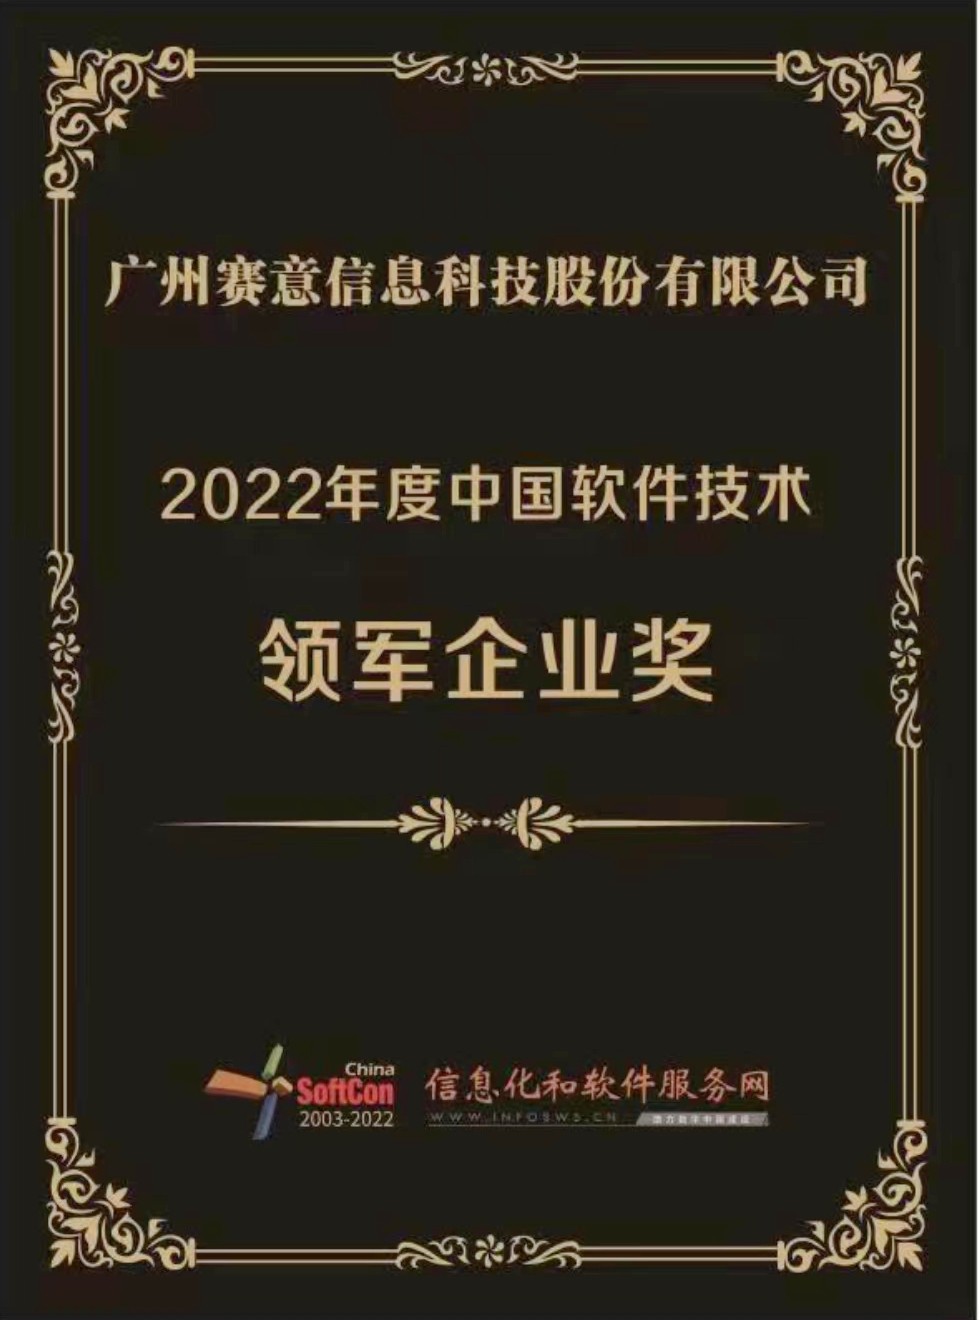 j9九游会信息荣获“2022年度中国软件技术领军企业奖”